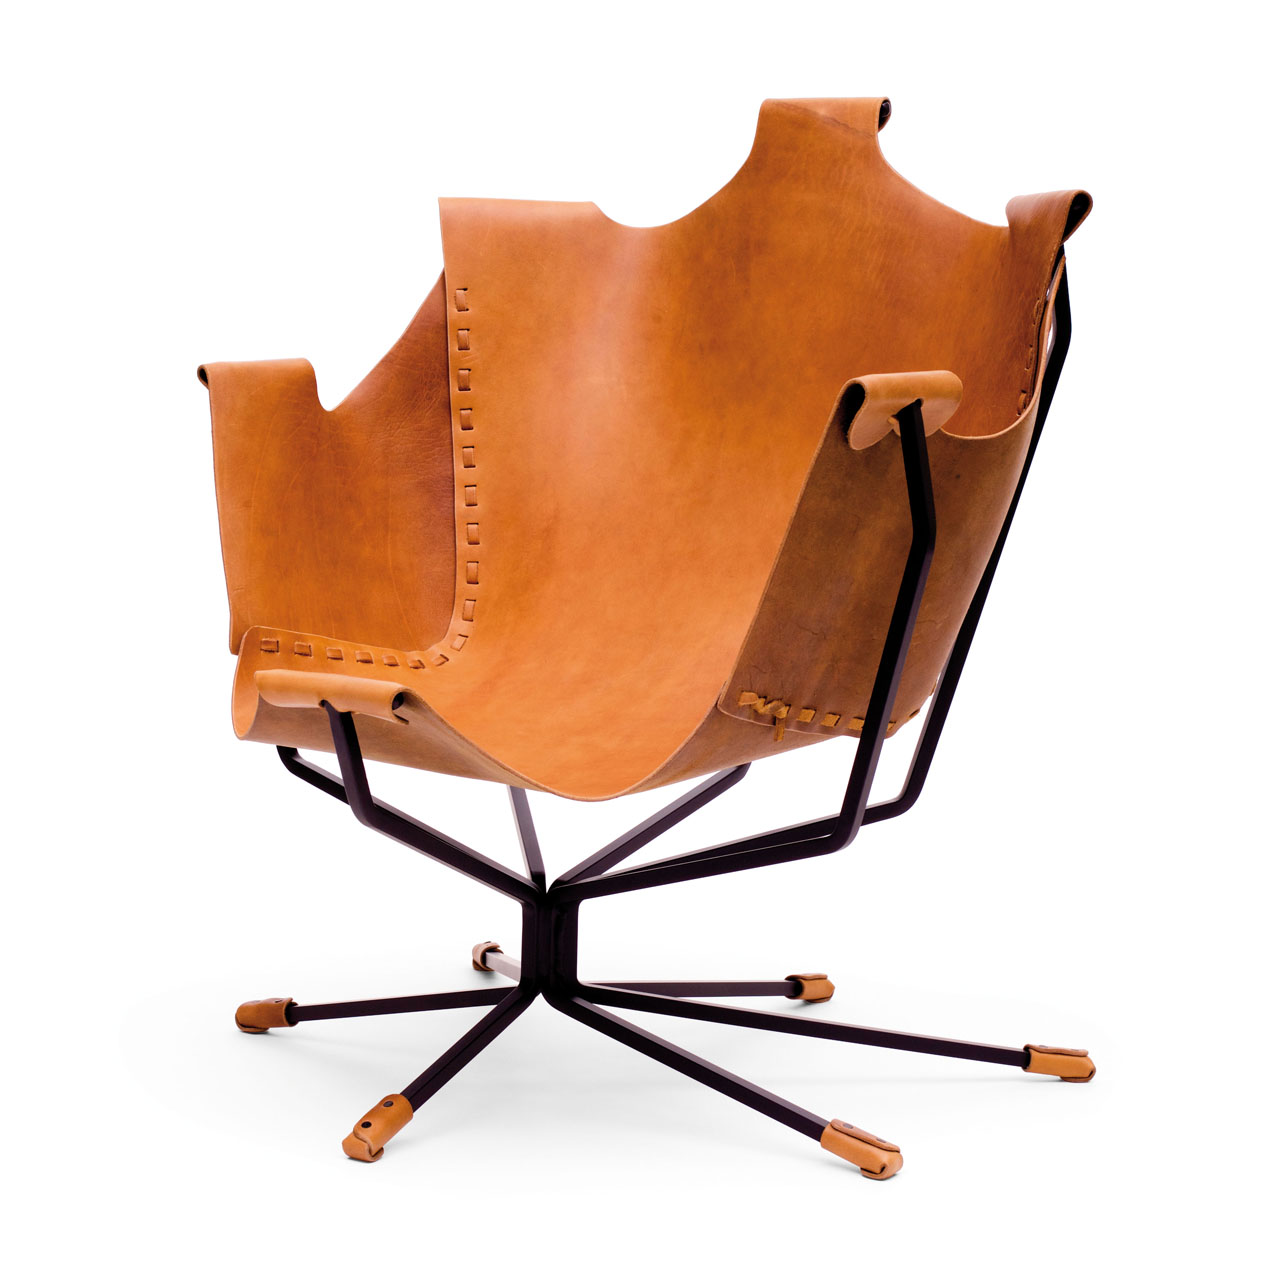 Flight of Fancy lounge chair by Dan Wenger